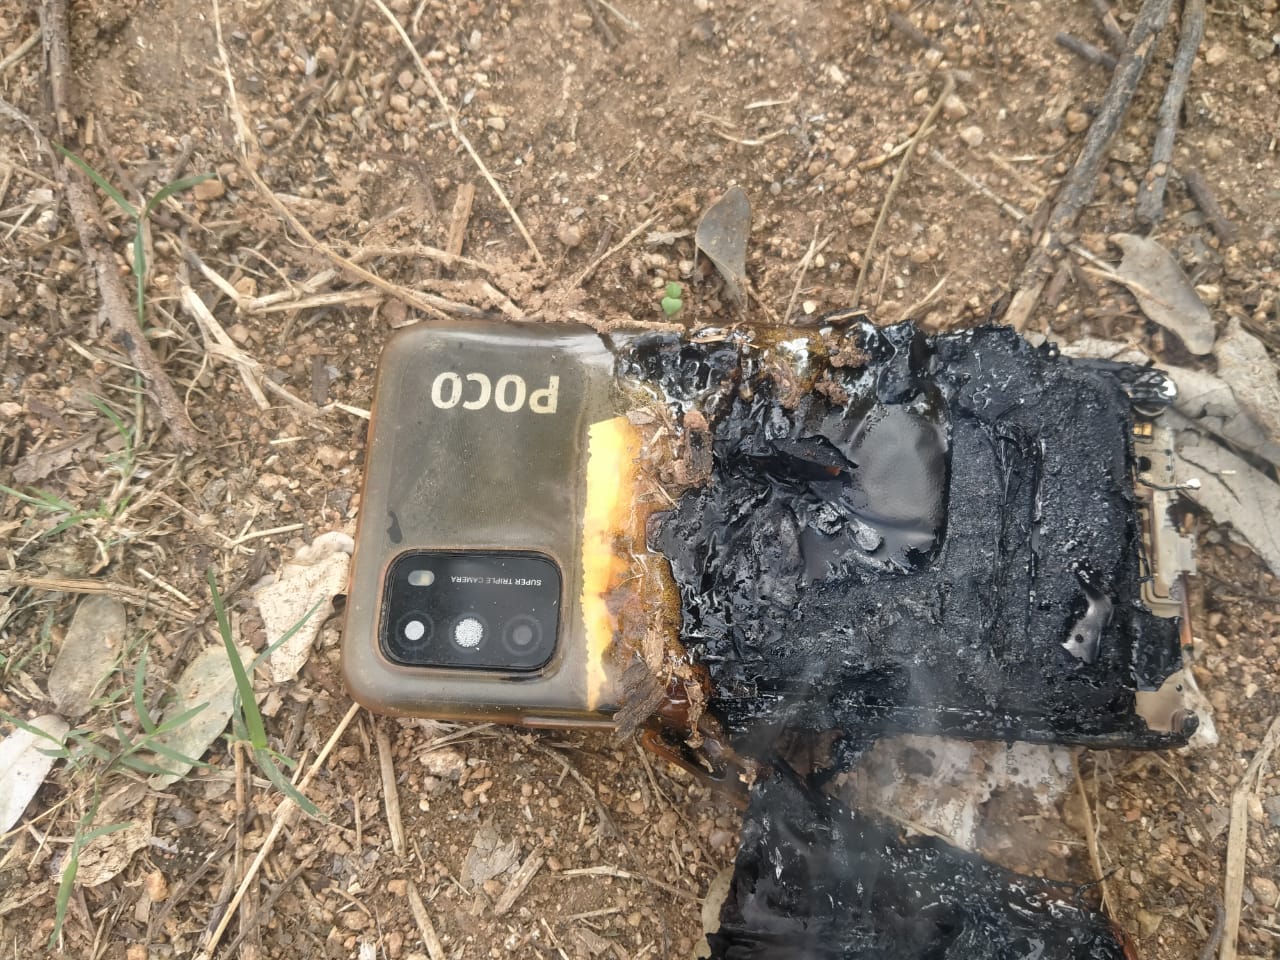 POCO M3 smartphone explodes in India